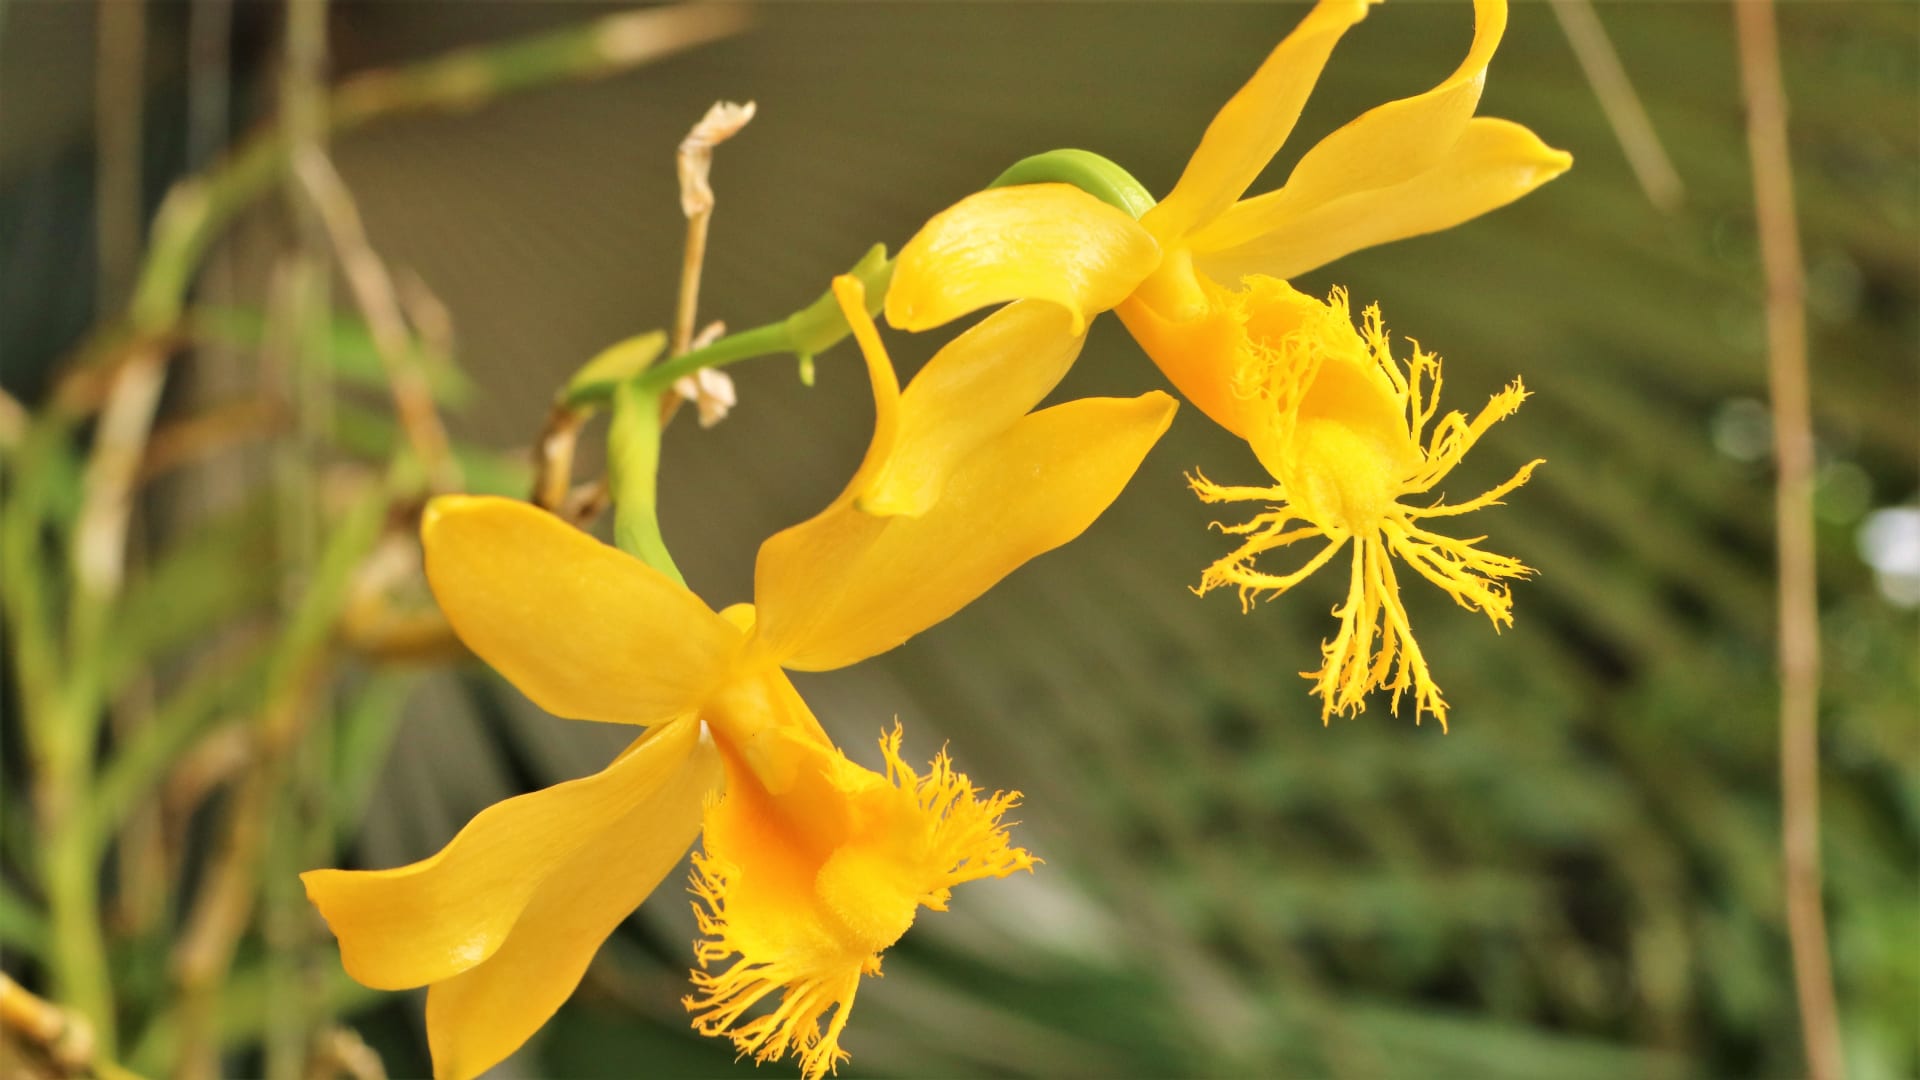 Orchidej  Dendrobium brymerianum je doma v jihovýchodní Asii. Většina z téměř 1600 druhů dendrobií kvete na jaře, tento druh nám však dělá radost v létě. Zářivě žluté květy zaujmou roztřepeným pyskem, který vypadá jako krajkový.